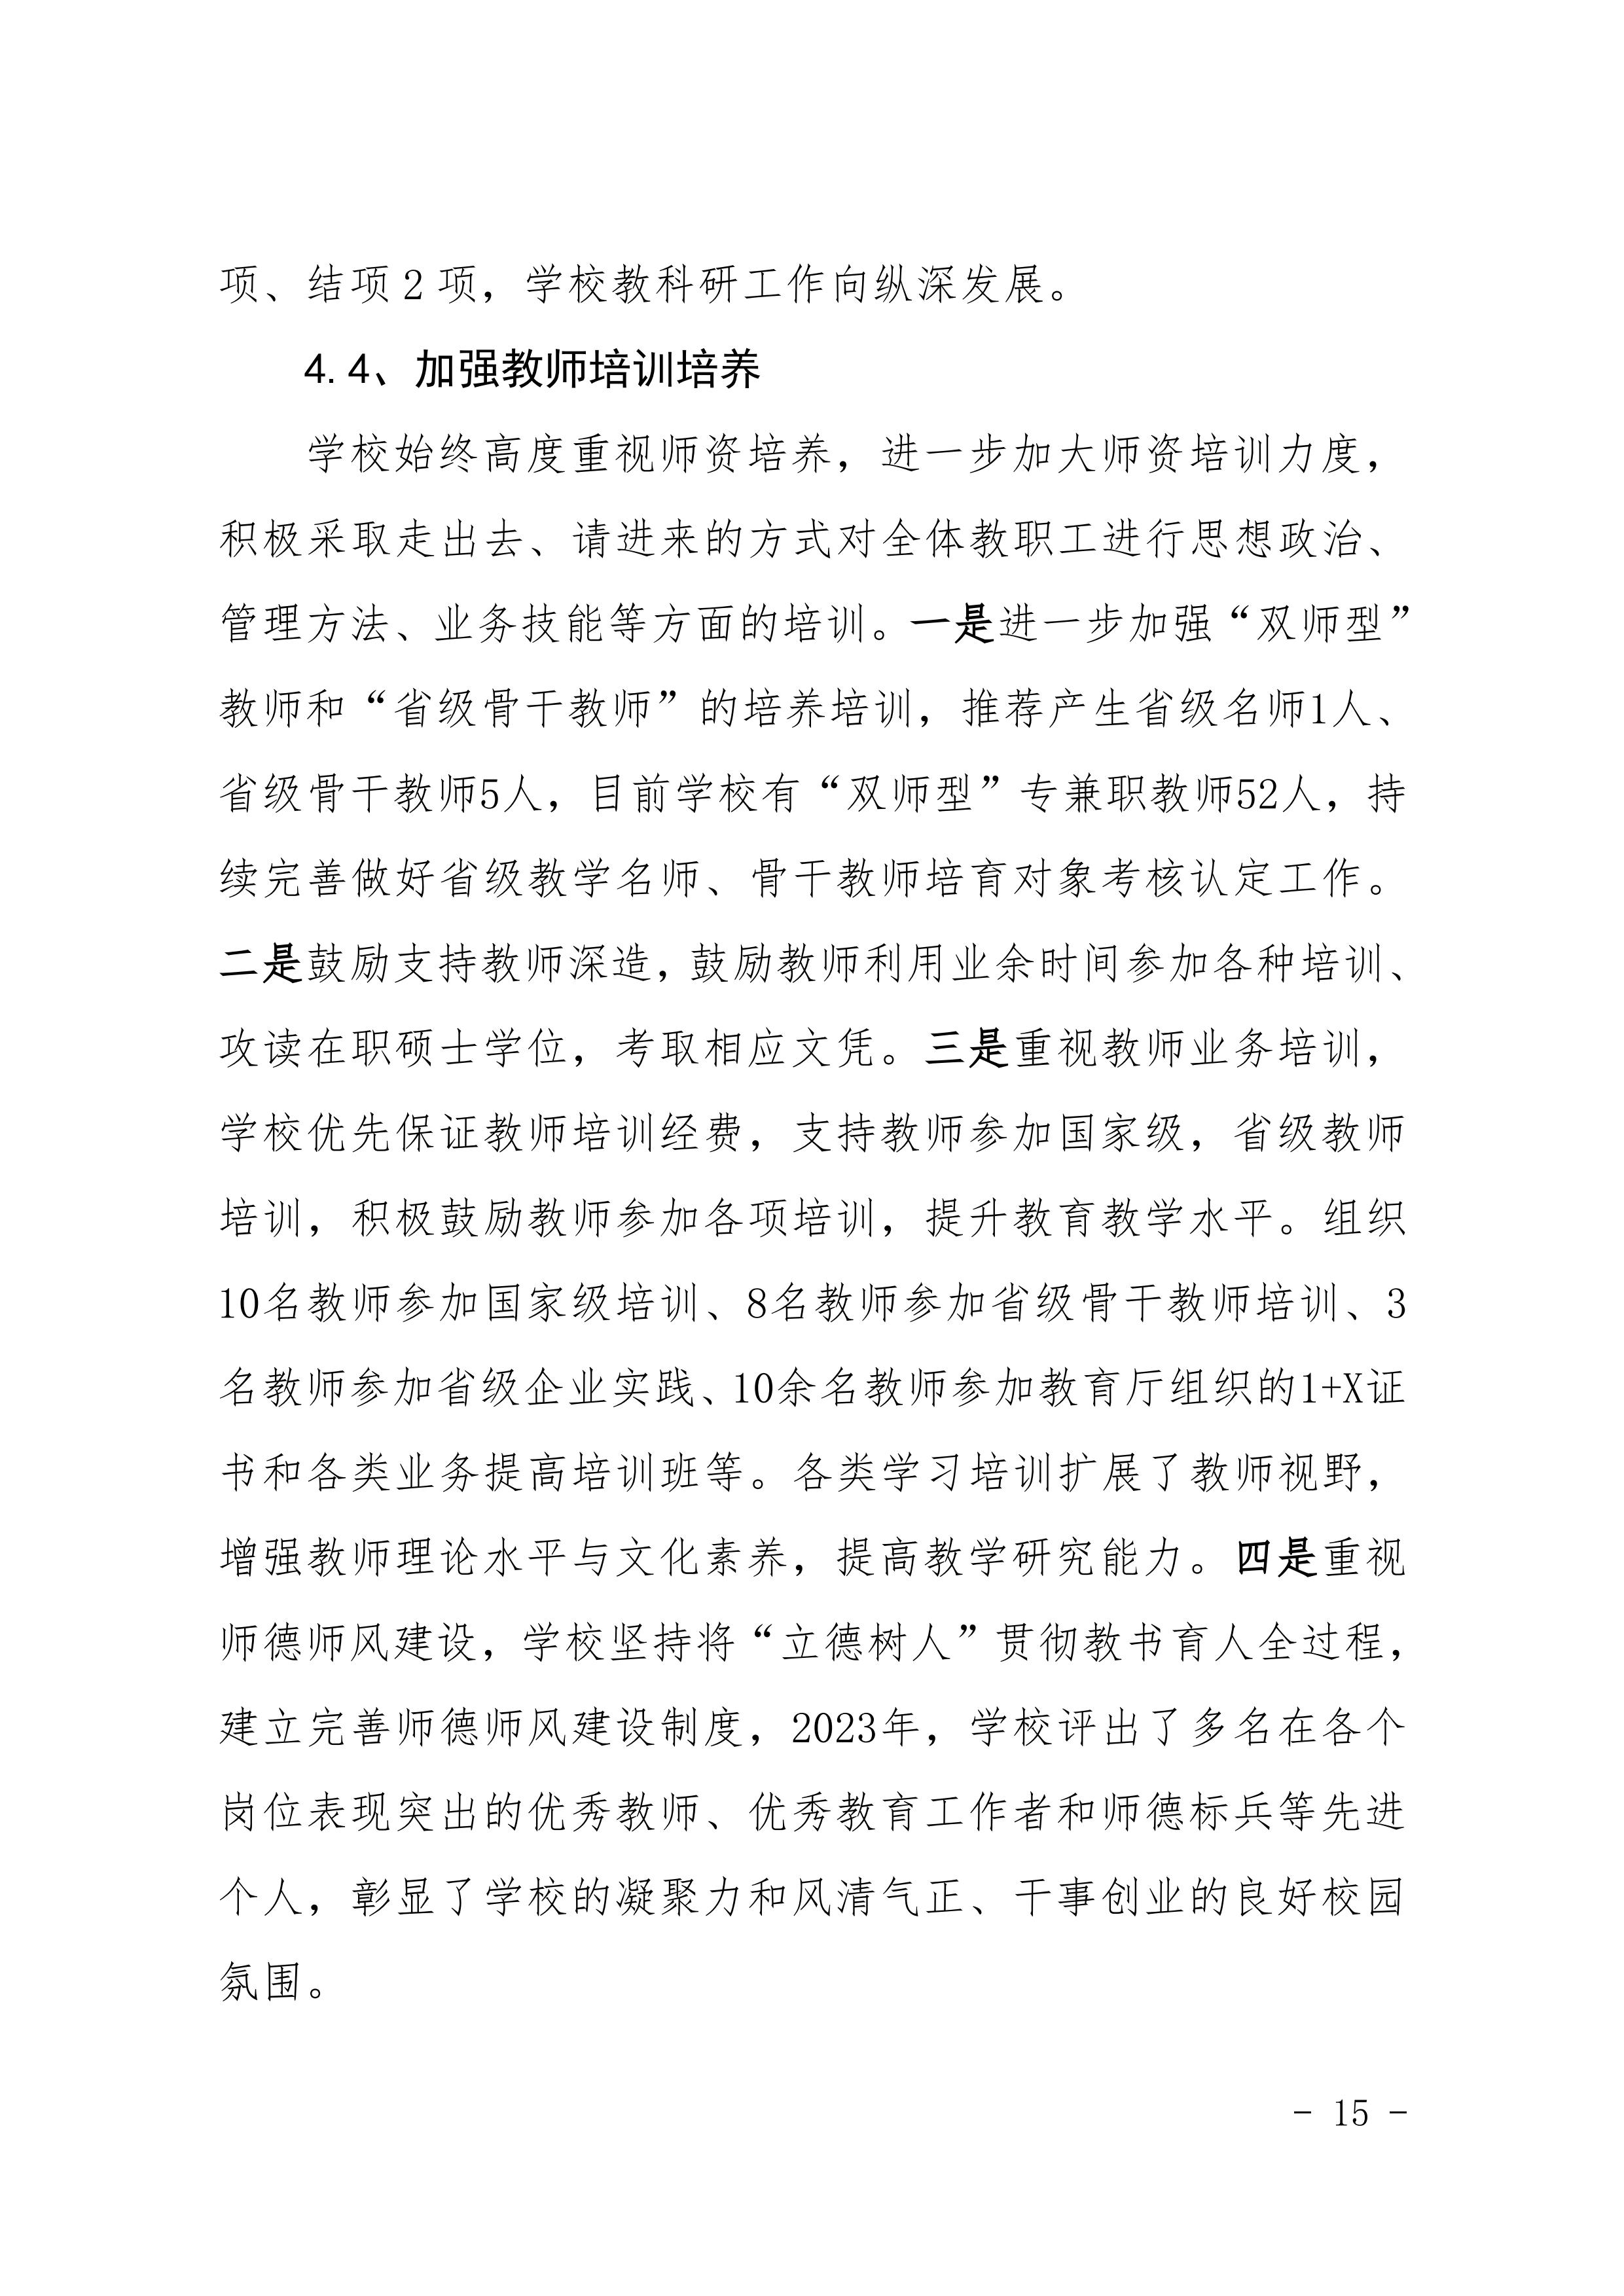 河南省民政学校职业教育质量报告（2023年度）发布版_18.jpg